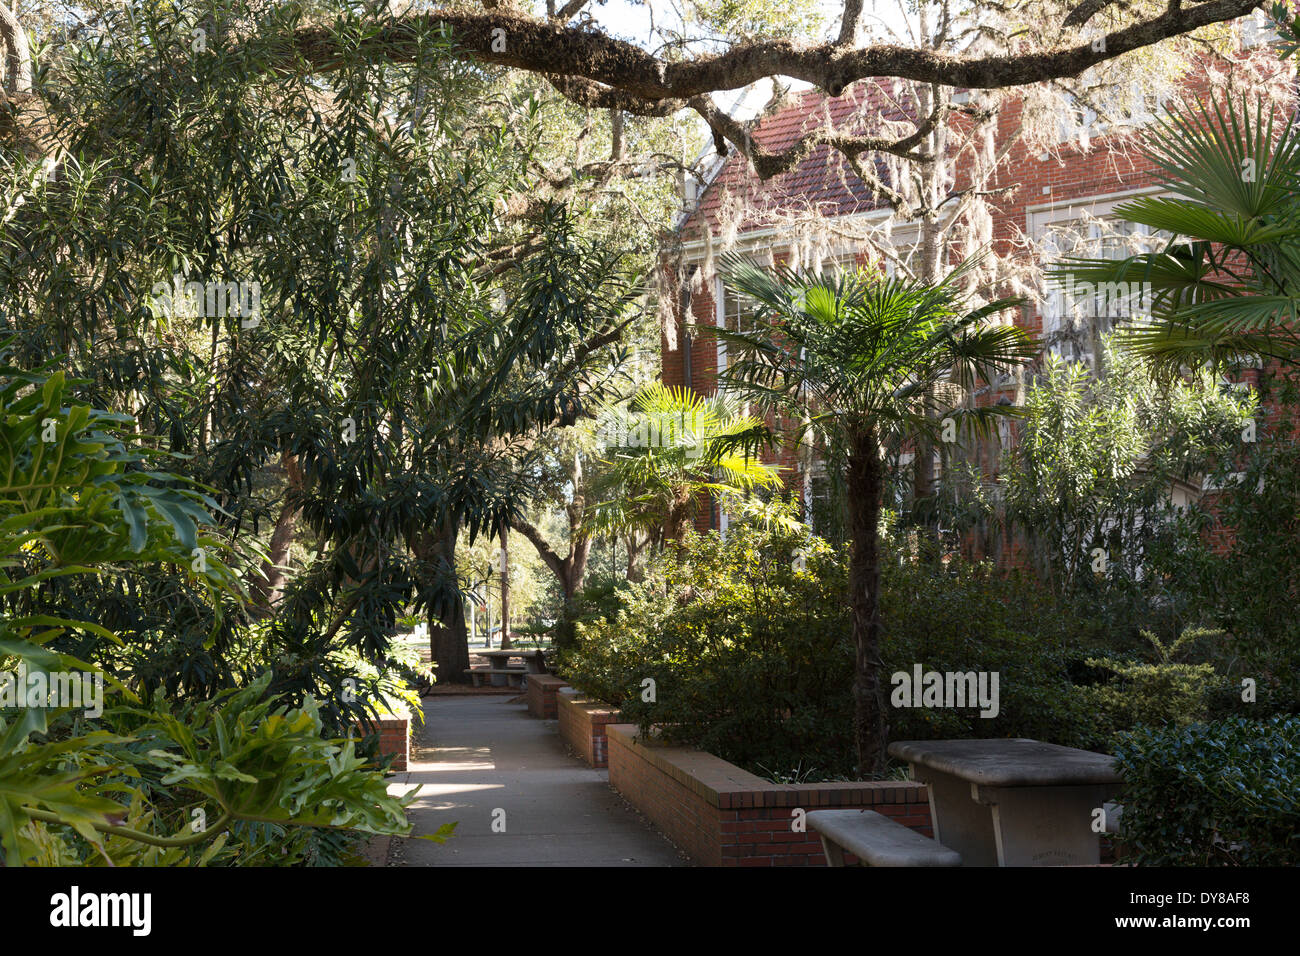 La mousse espagnole sur les arbres et bâtiments de classe, l'Université de Floride, Gainesville, FL, USA Banque D'Images